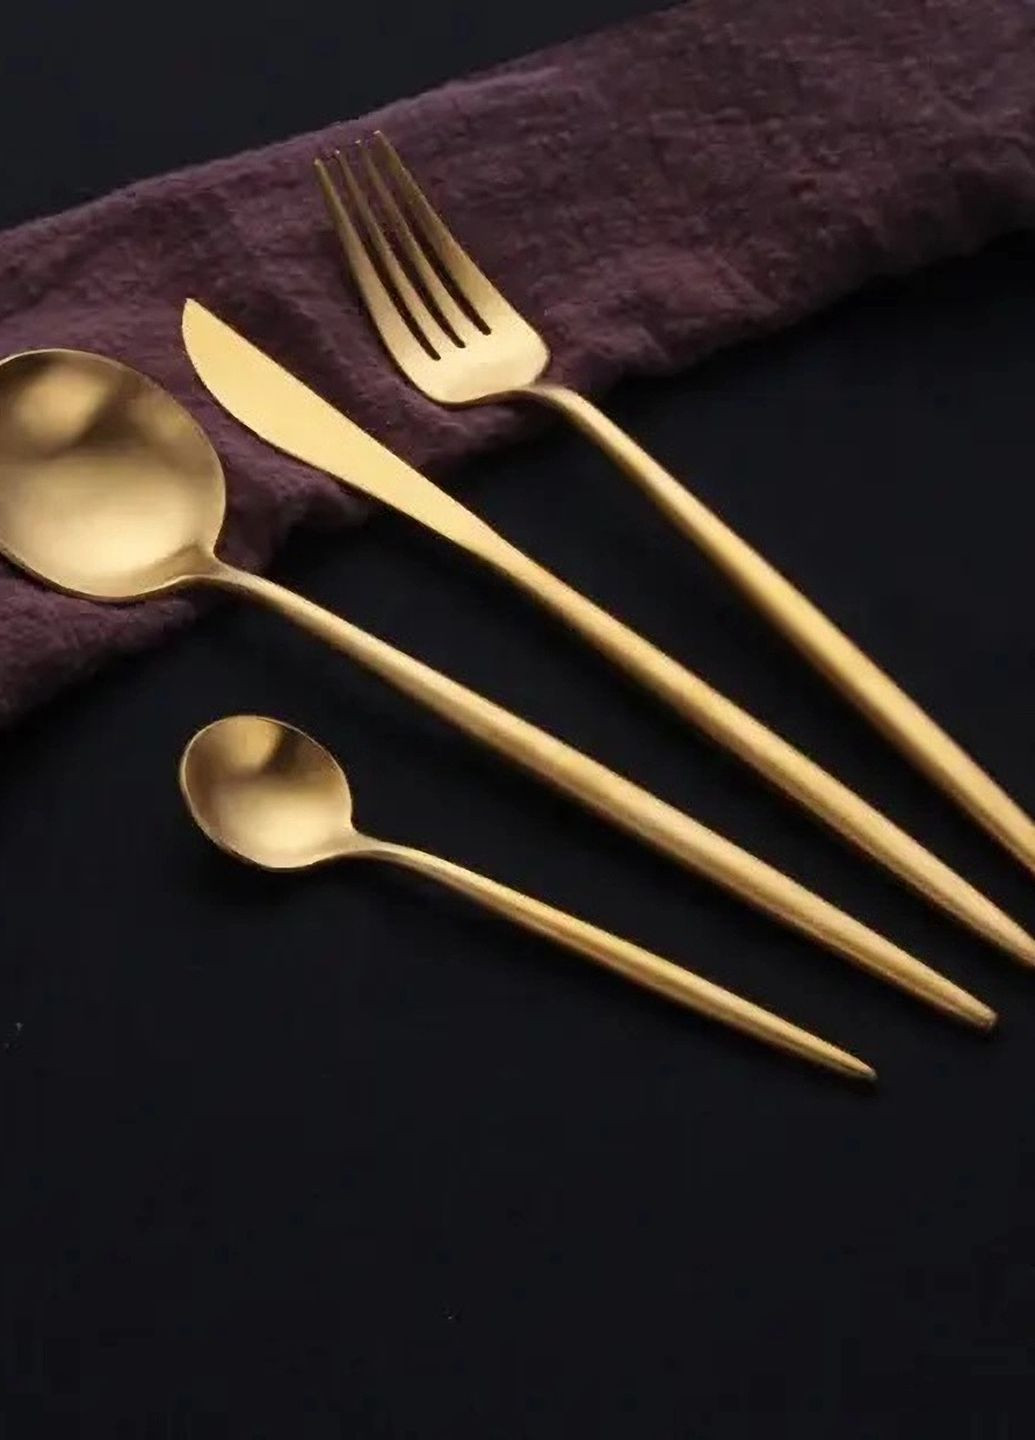 Набір столових приборів з паличками для їжі на 2 особи золото кольору з нержавіючої сталі REMY-DECOR porto (267897085)